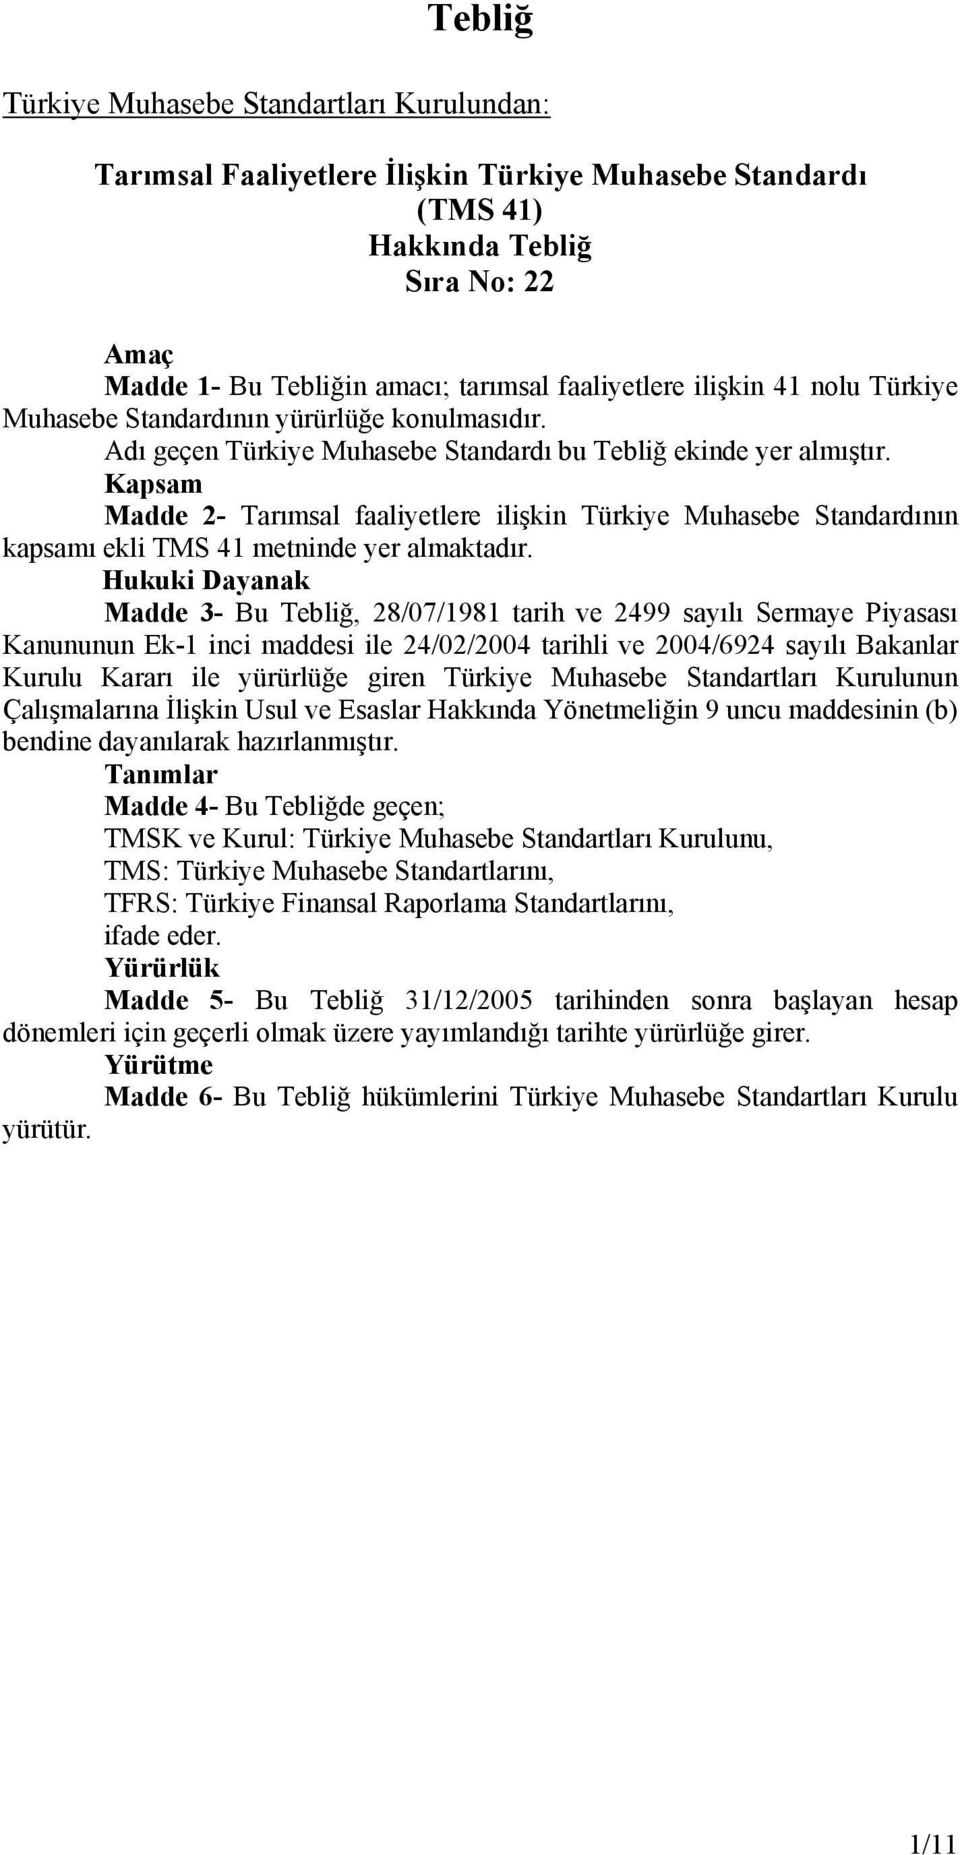 Kapsam Madde 2- Tarımsal faaliyetlere ilişkin Türkiye Muhasebe Standardının kapsamı ekli TMS 41 metninde yer almaktadır.